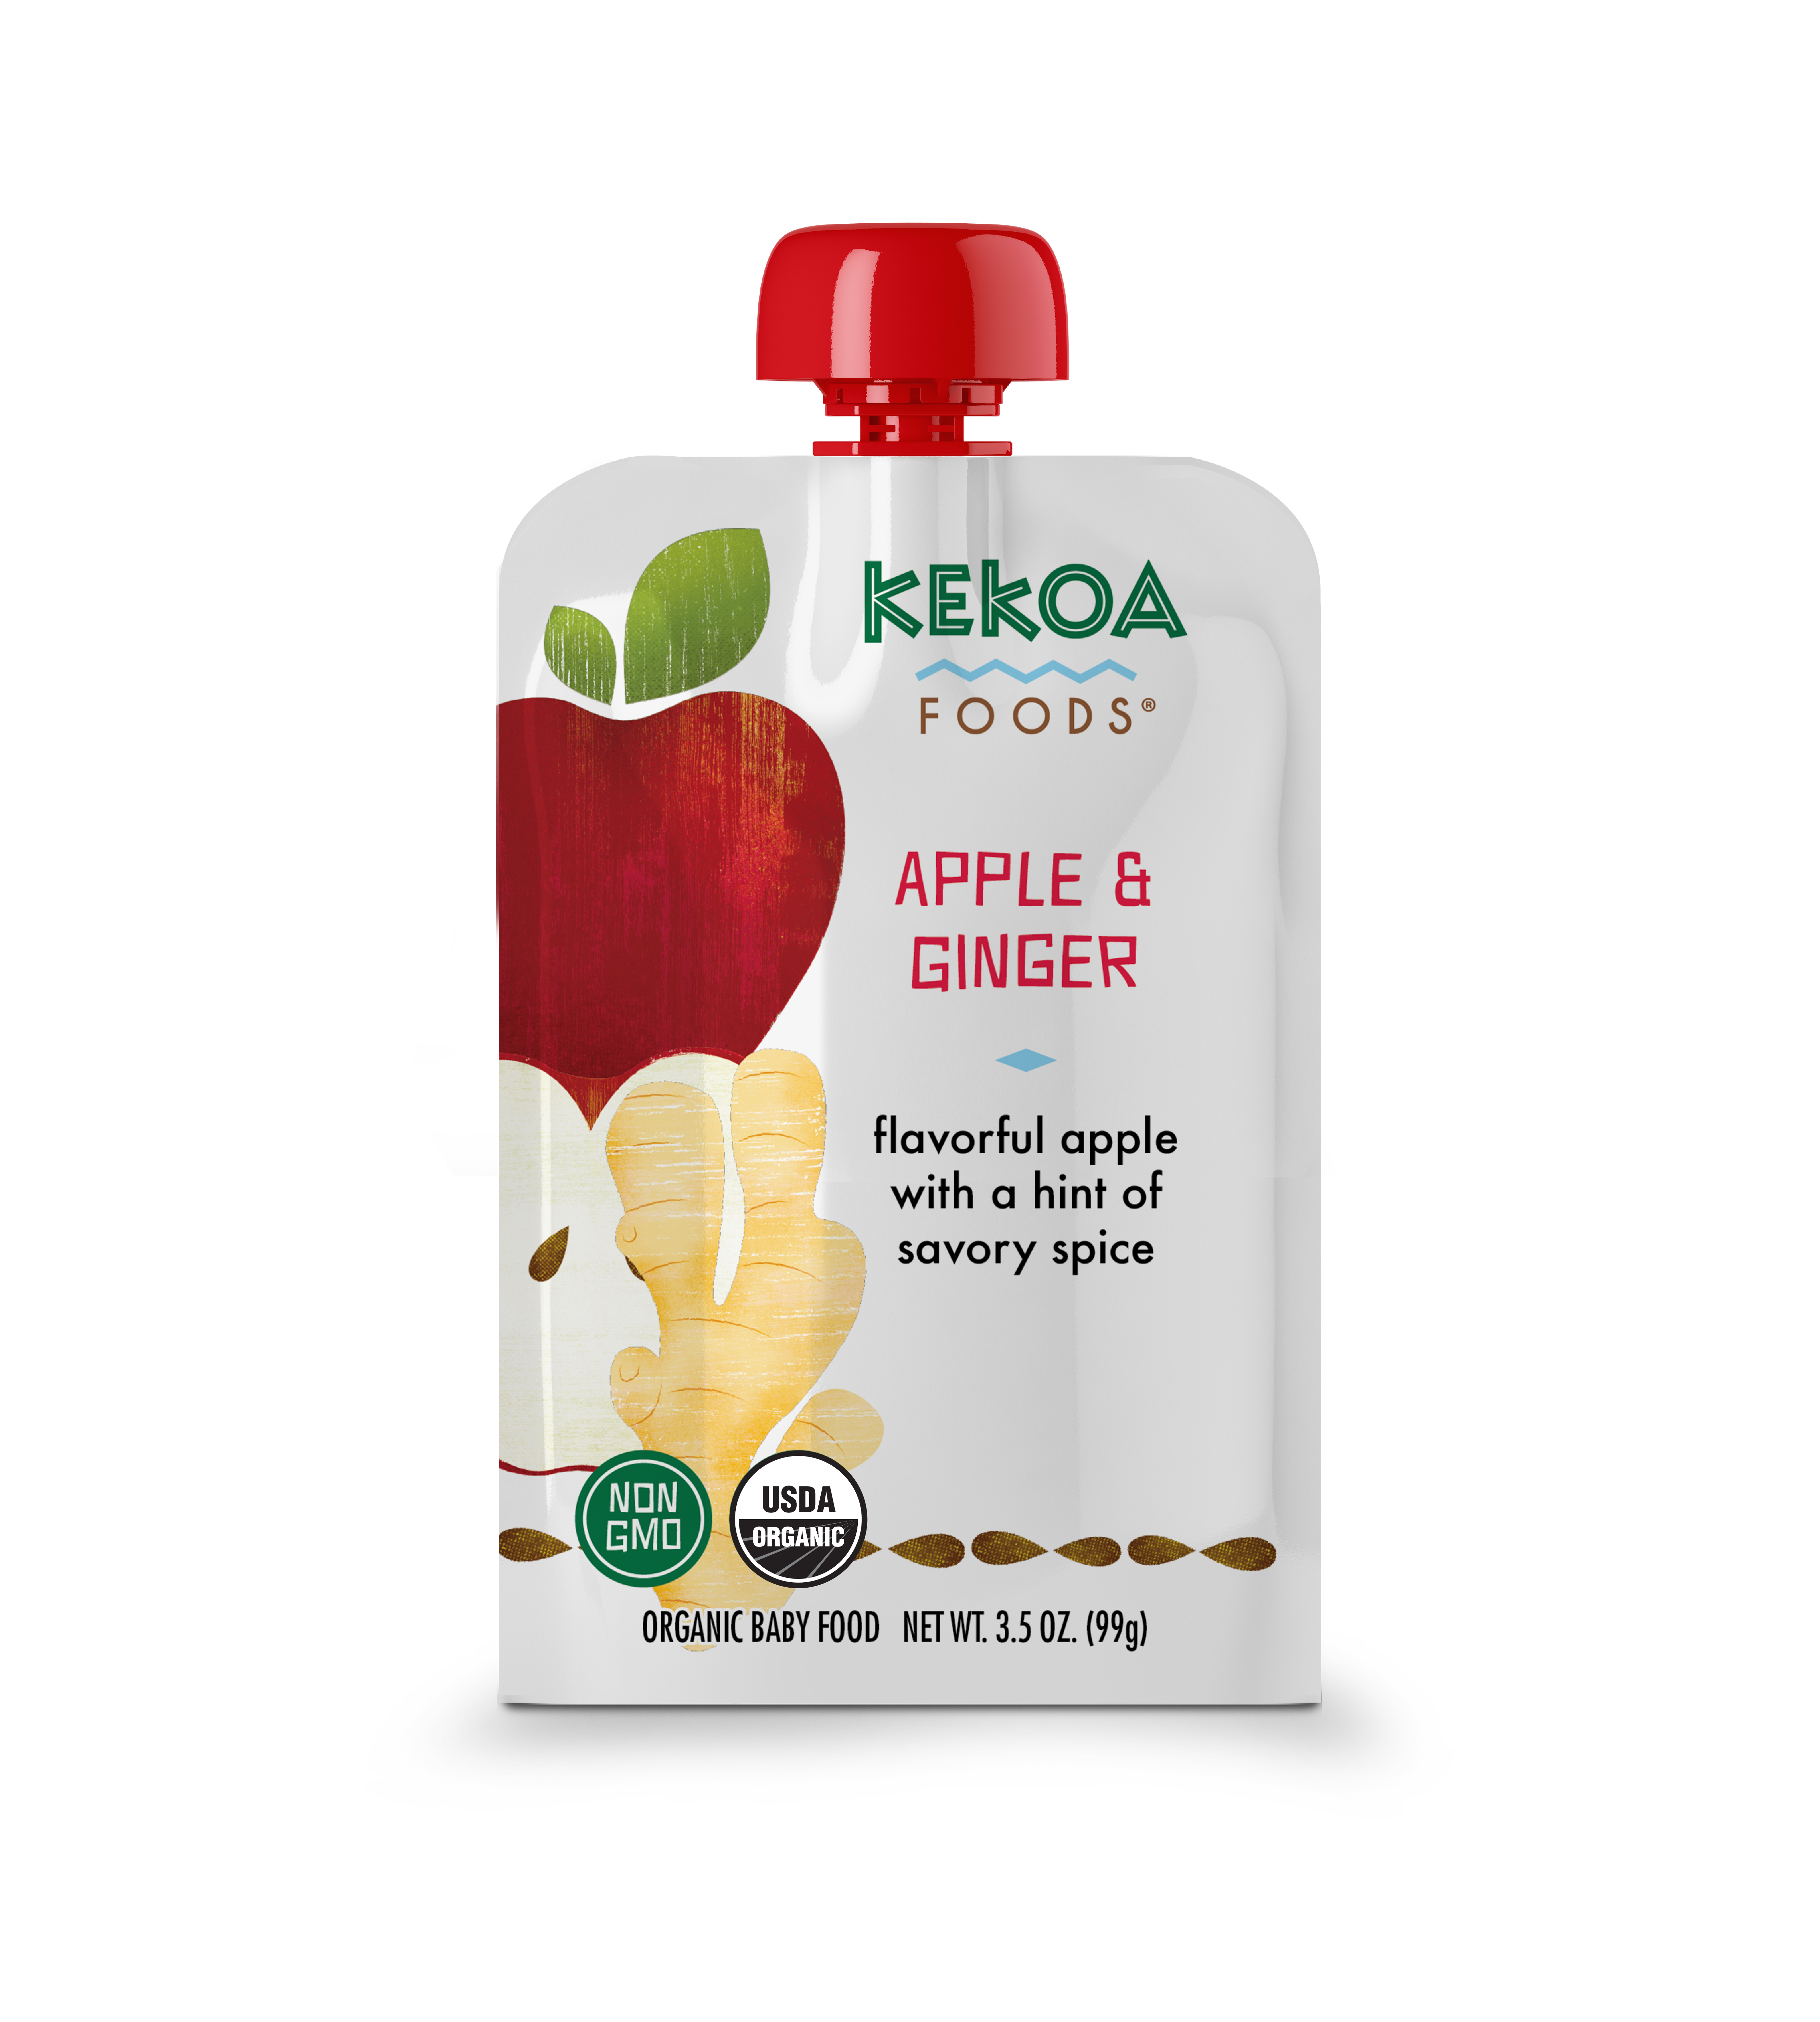 Kekoa Foods - Apple and Ginger 12 innerpacks per case 3.5 oz